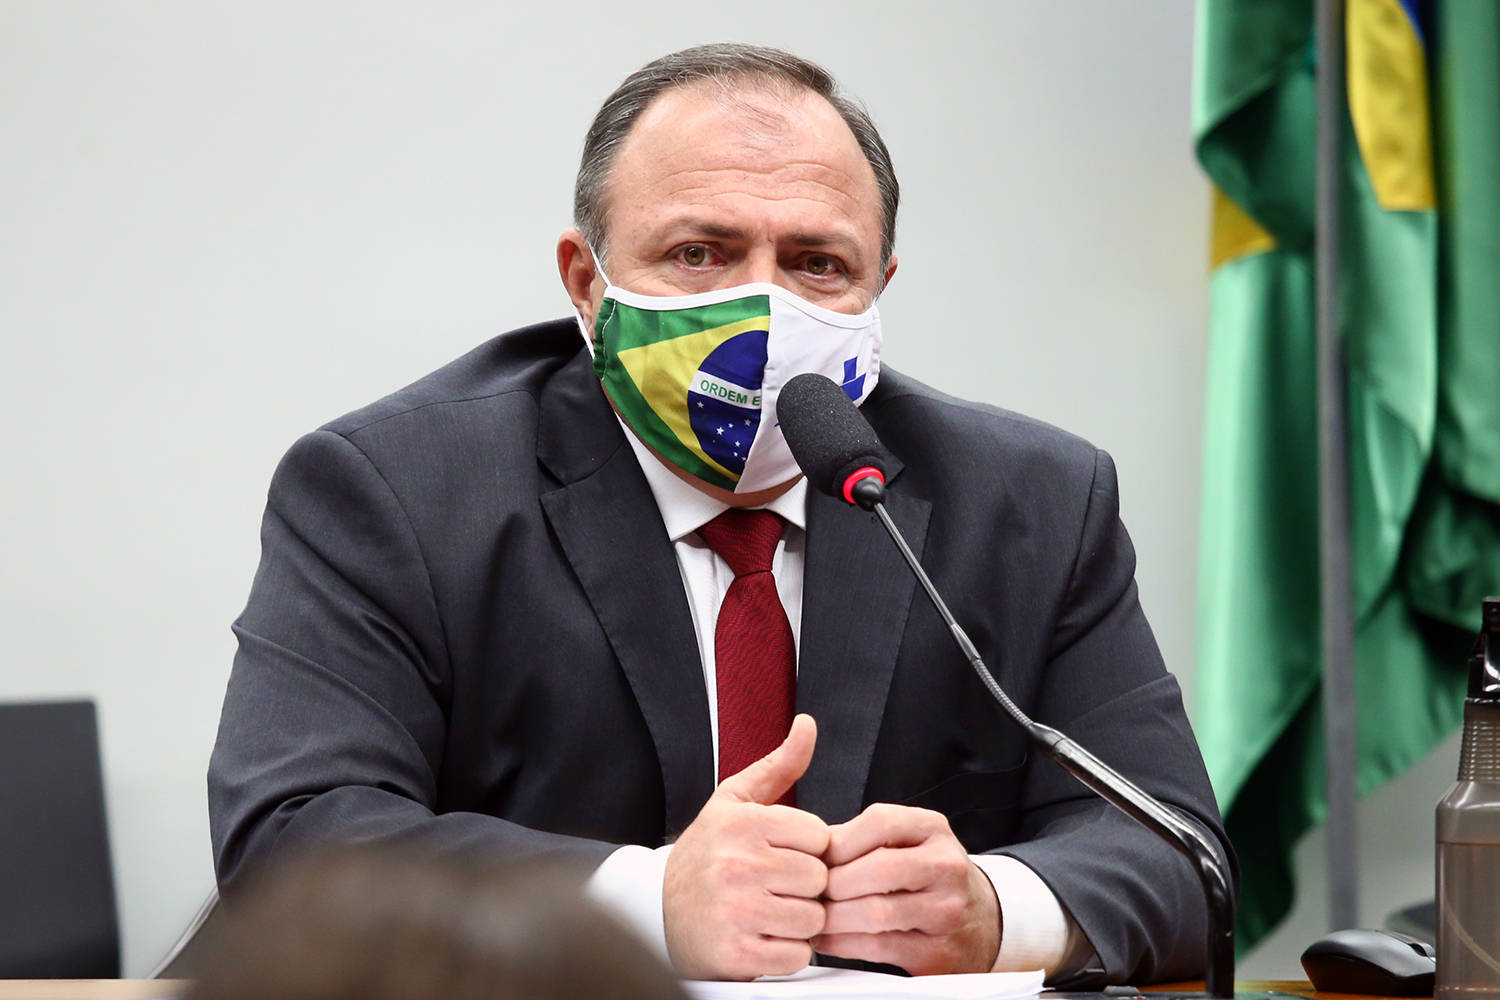 O ministro interino da Saúde, Eduardo Pazuello, reconheceu nesta quinta-feira (13) que faltaram medicamentos nos hospitais brasileiros para combate ao novo coronavírus